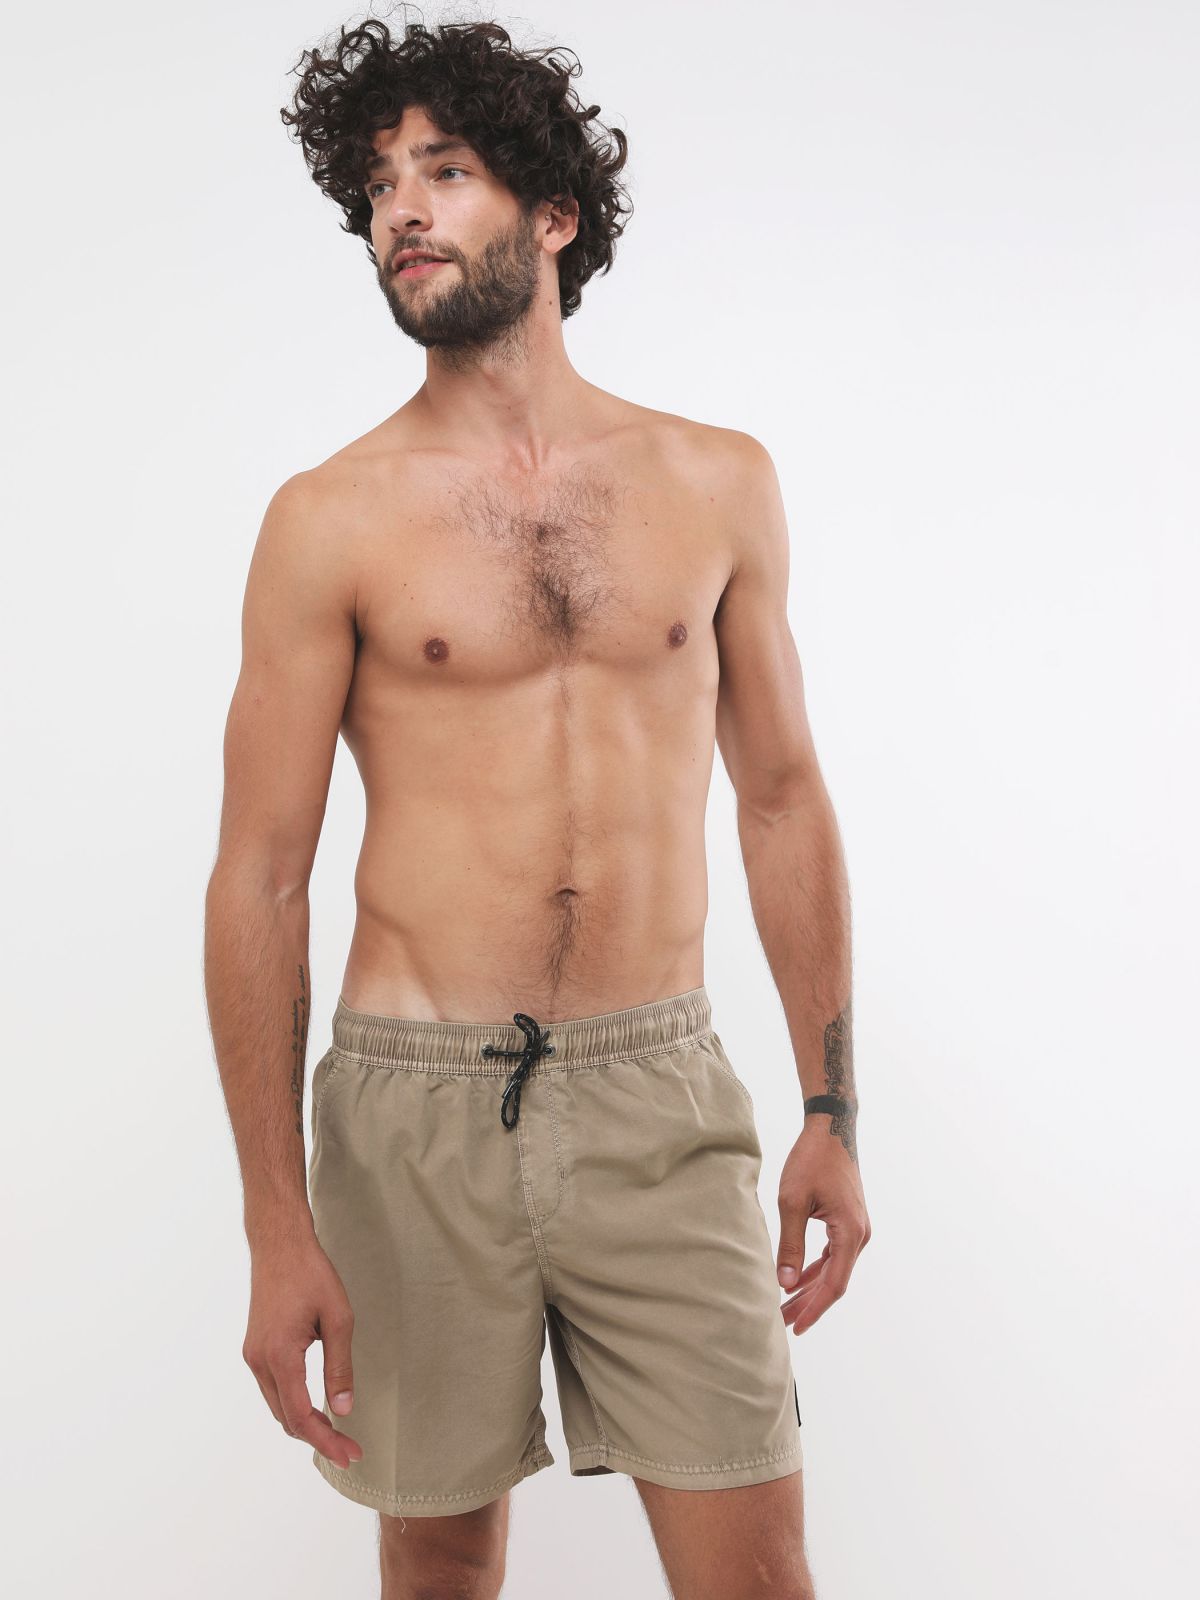  מכנסי בגד ים עם פאץ' לוגו של BILLABONG